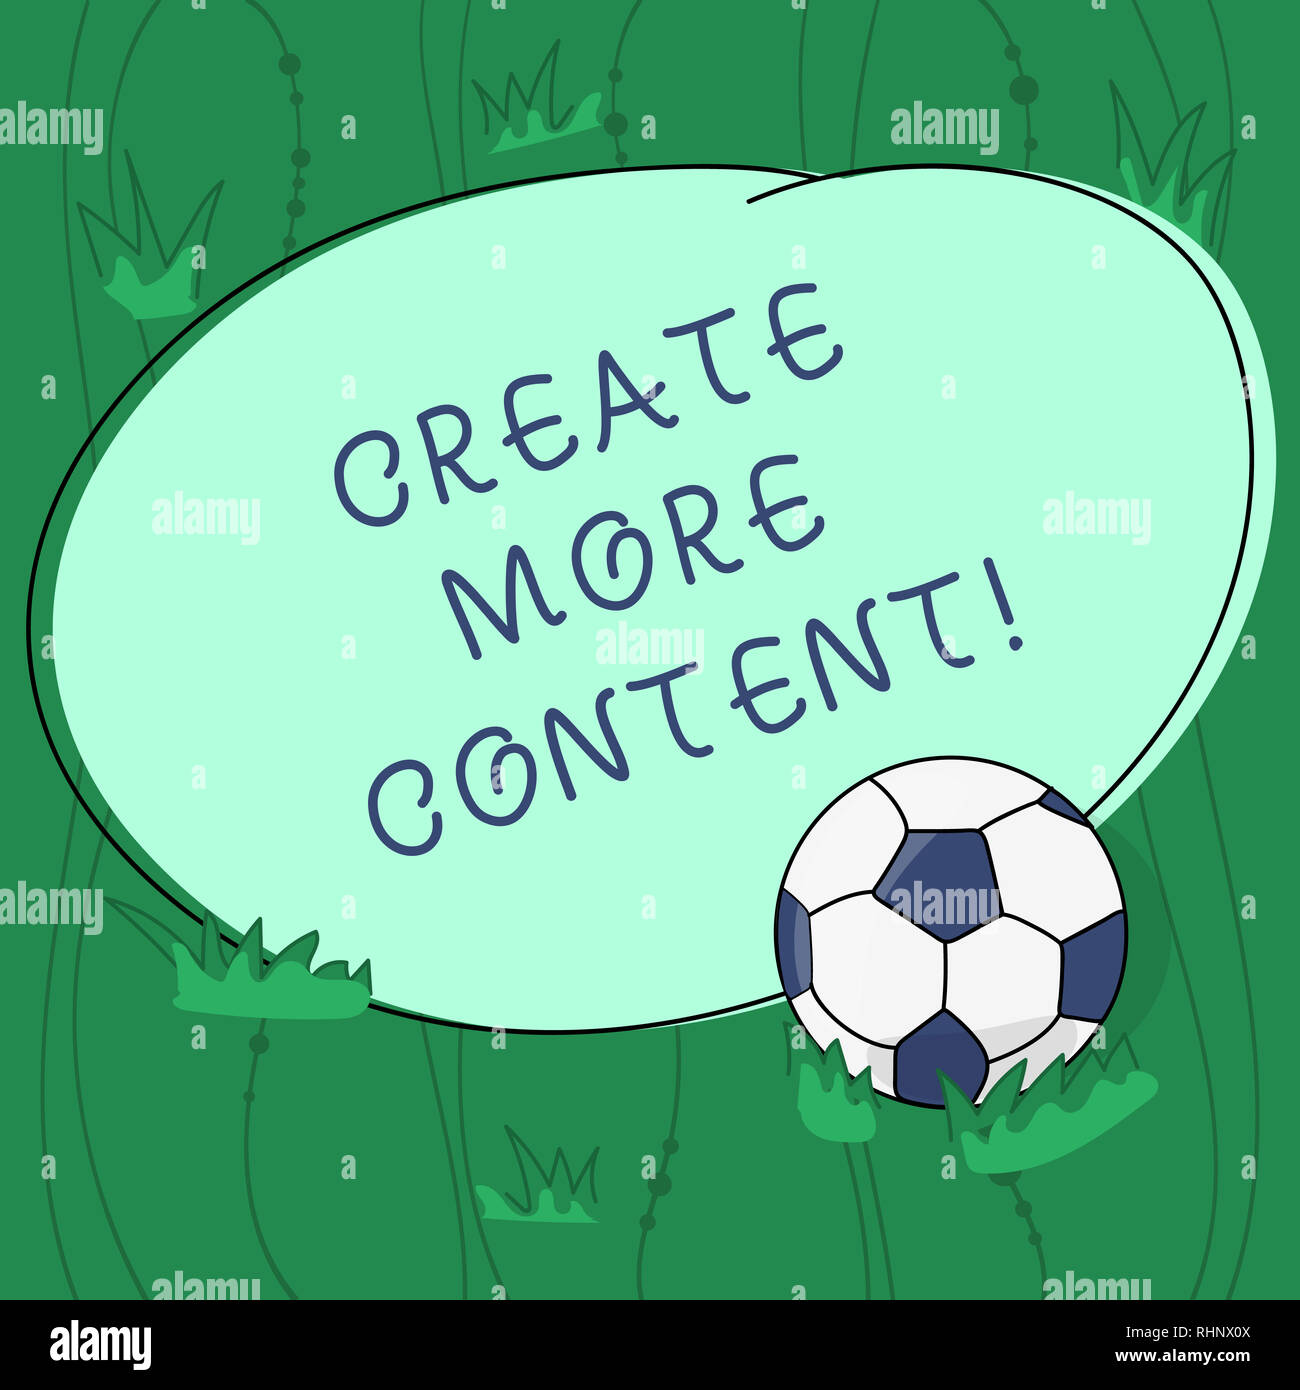 Handschrift Text schreiben mehr Inhalte erstellen. Konzept Bedeutung Wörter Satz schreiben zu gewinnen klar Publikum Fußball auf das Gras und Bl definiert Stockfoto